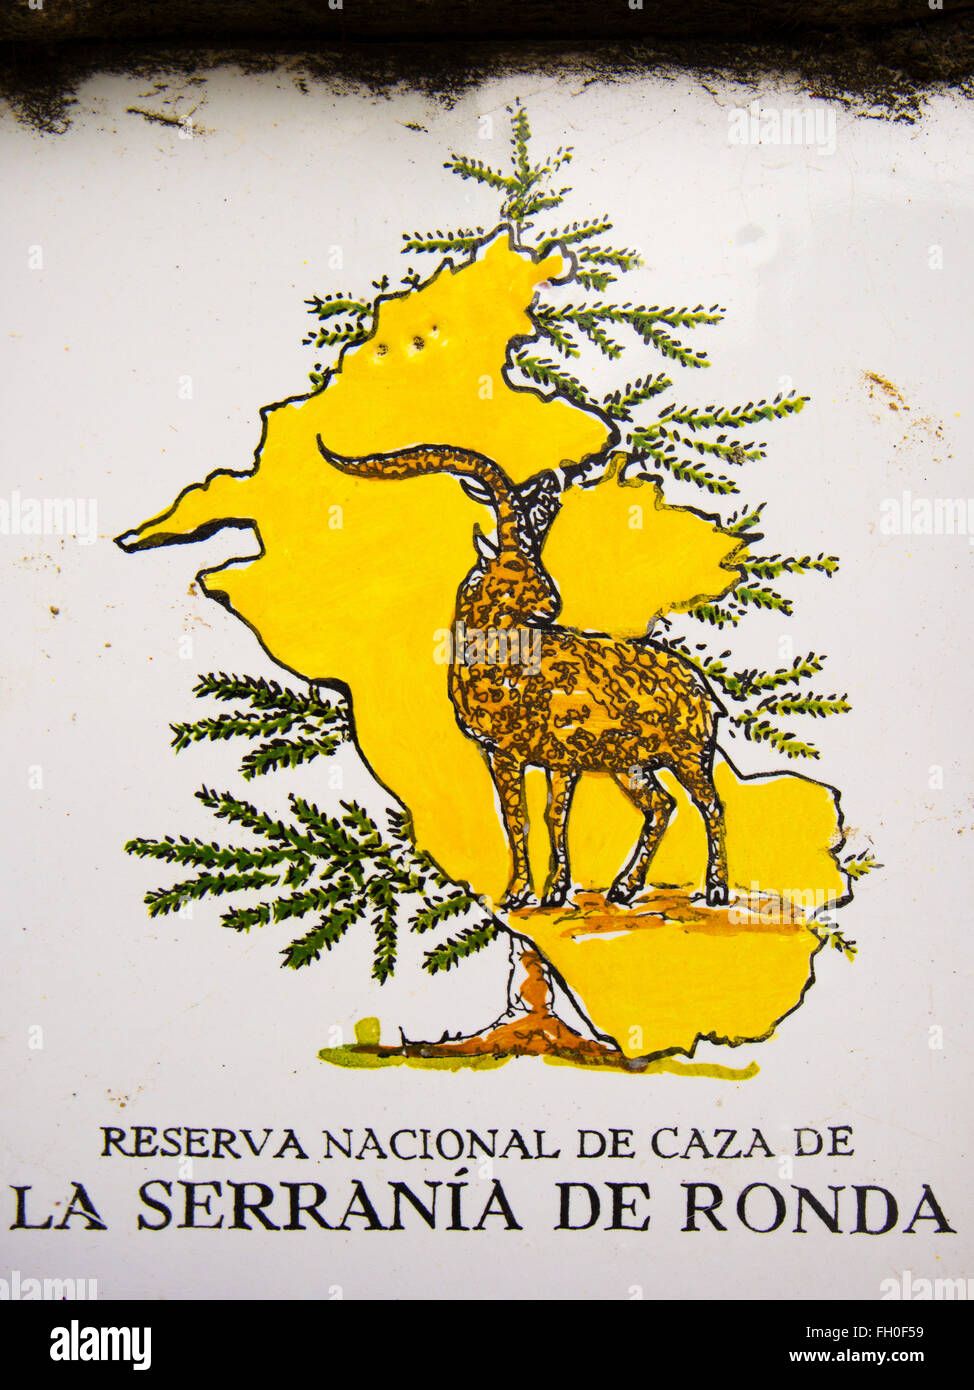 Les carreaux de céramique, Serrania de Ronda jeu national reserve, le ROEJ. La province de Malaga, Costa del Sol. Andalousie le sud de l'Espagne Banque D'Images